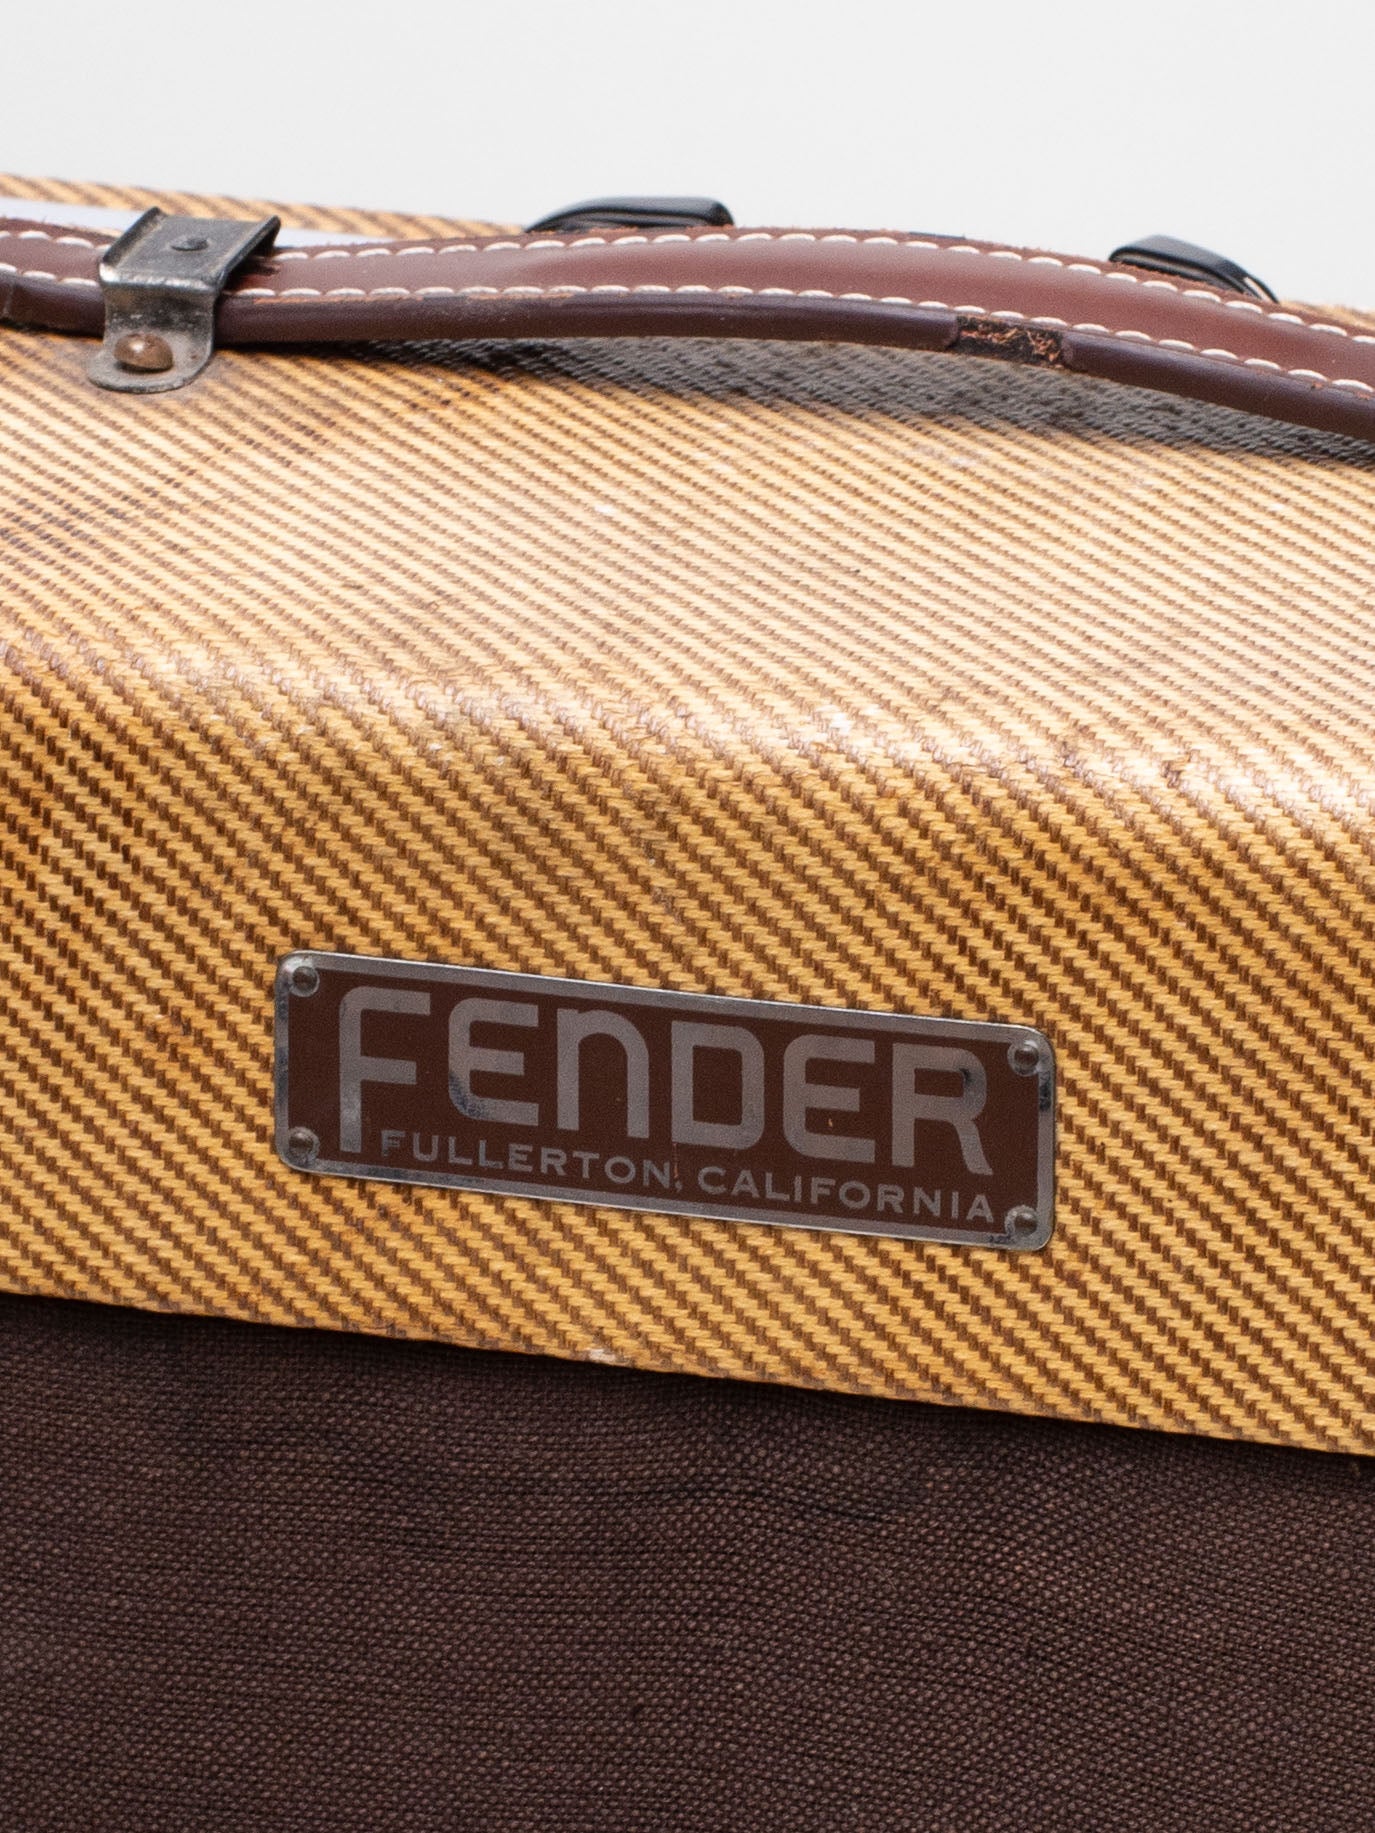 1954 Fender Deluxe